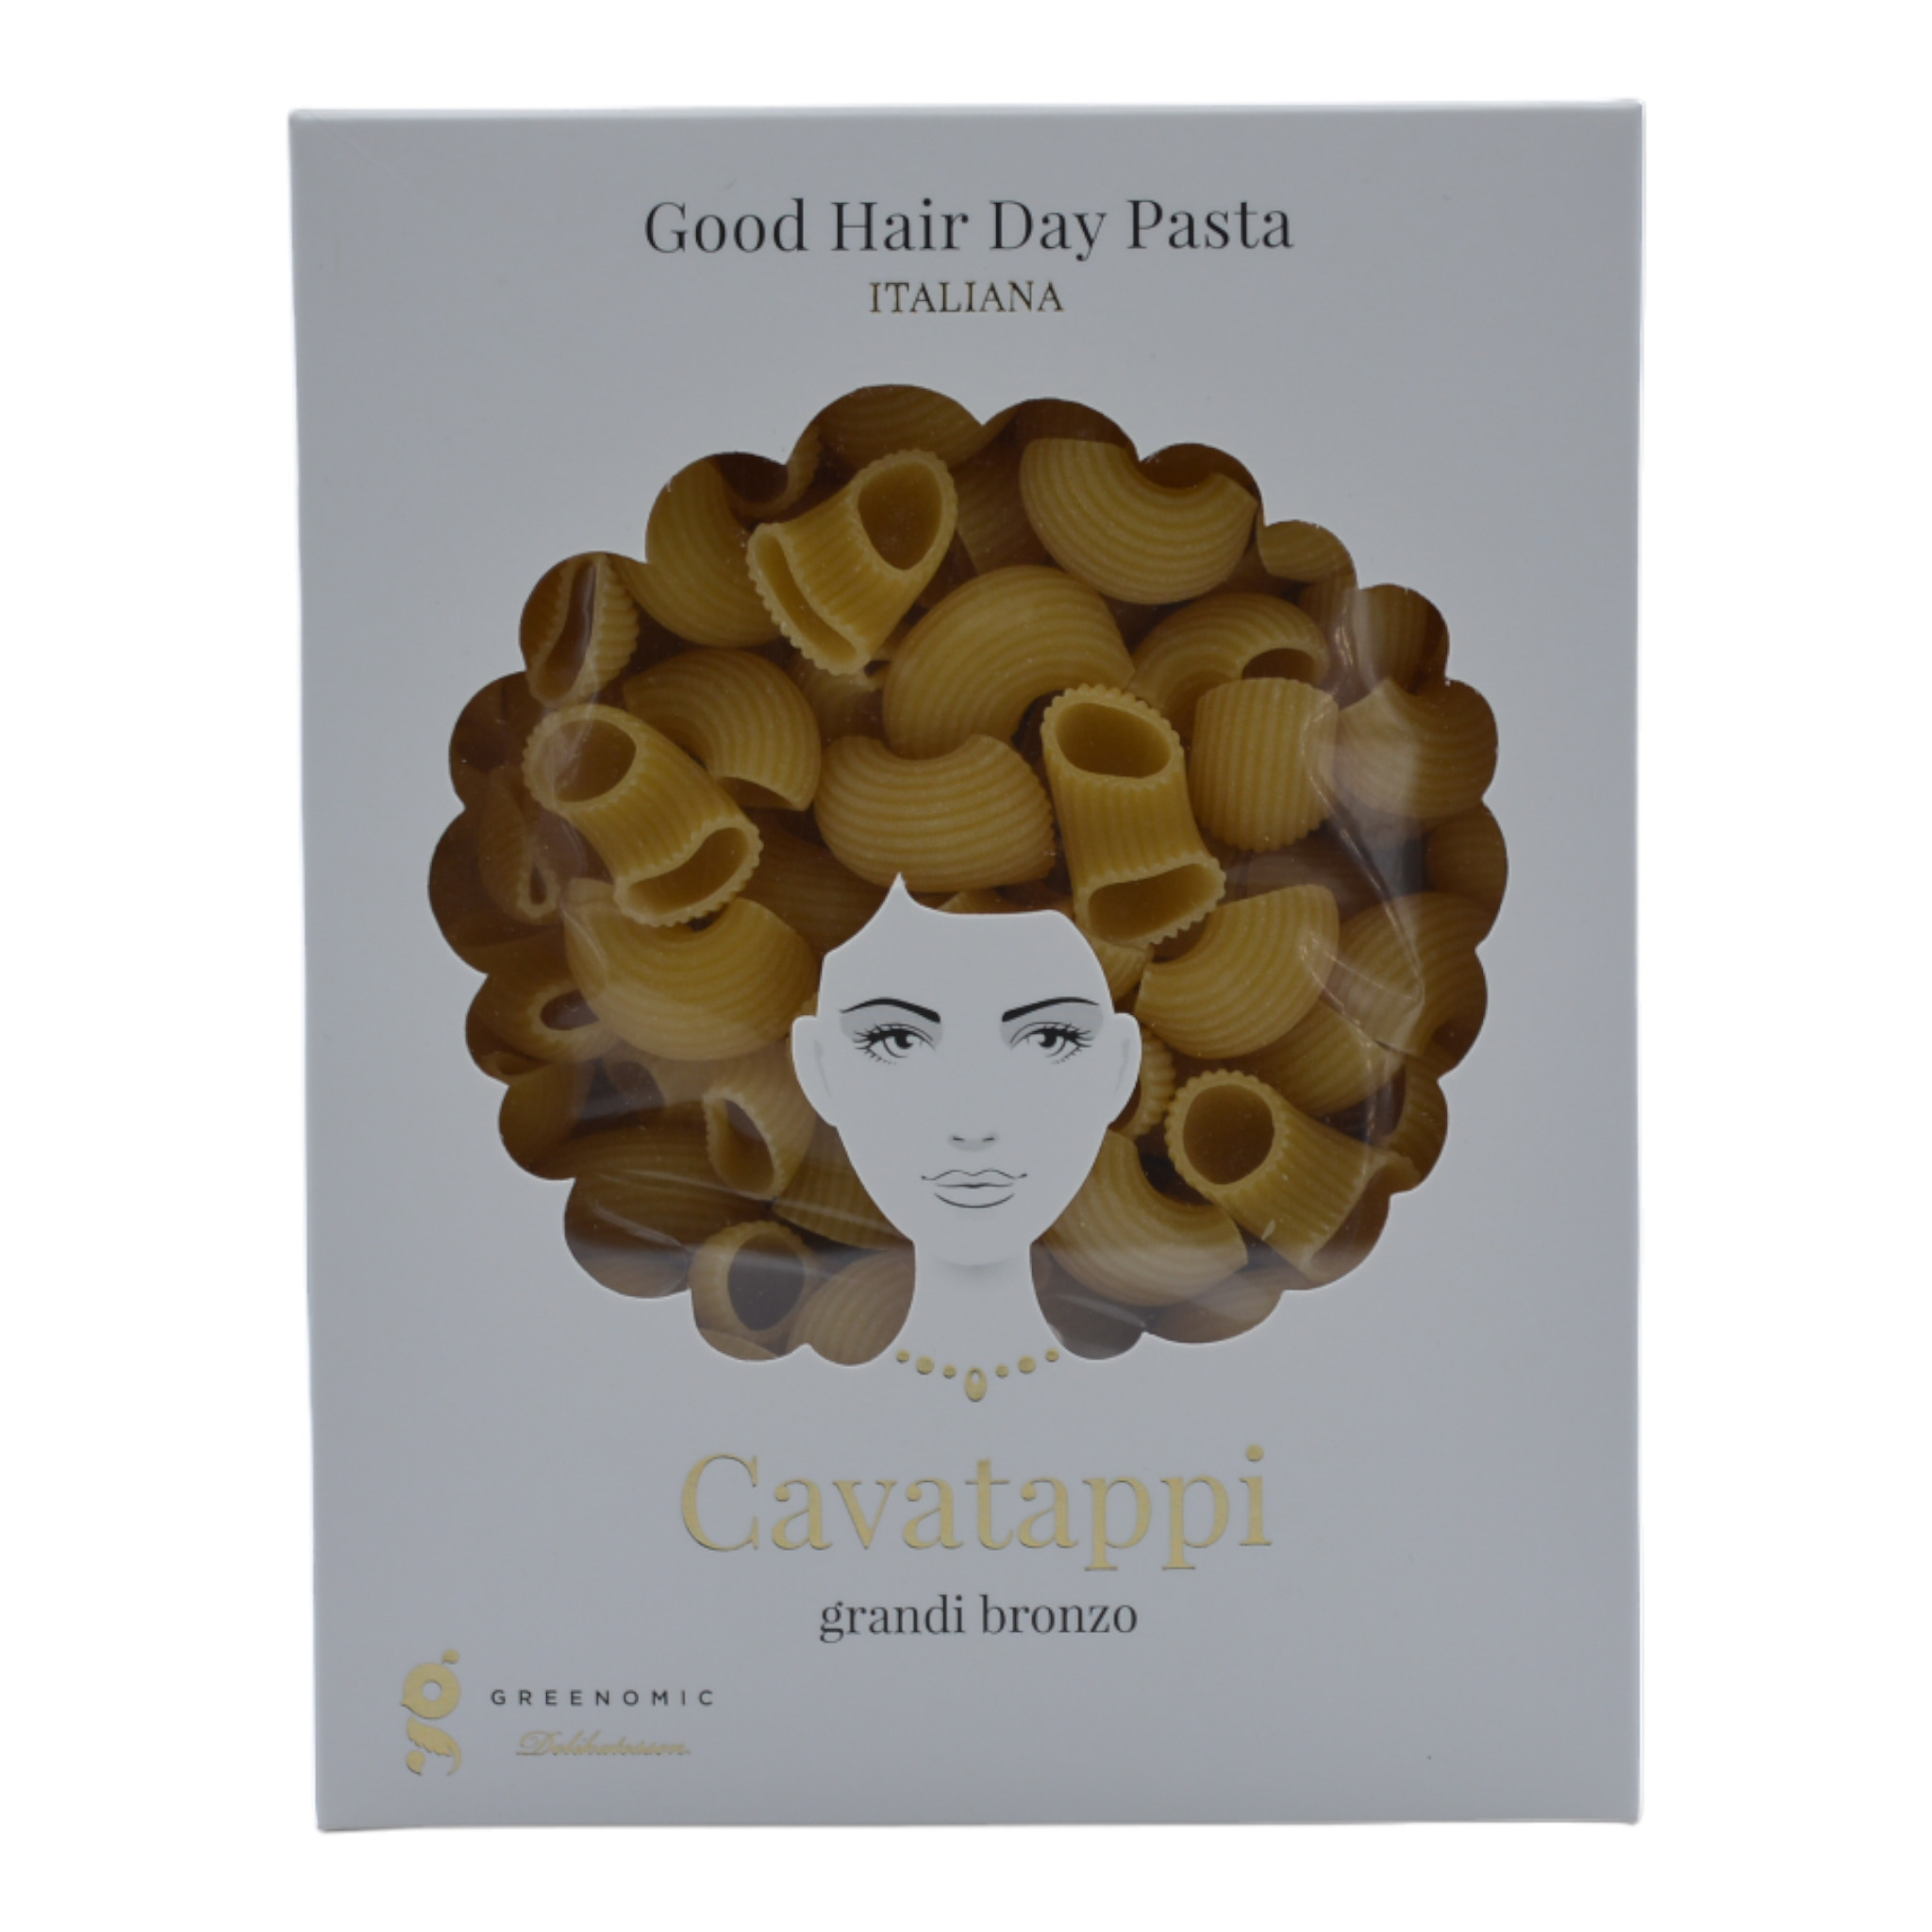 4260328813737 - Greenomic Delikatessen Good Hair Day Pasta Cavatappi grandi bronzo f